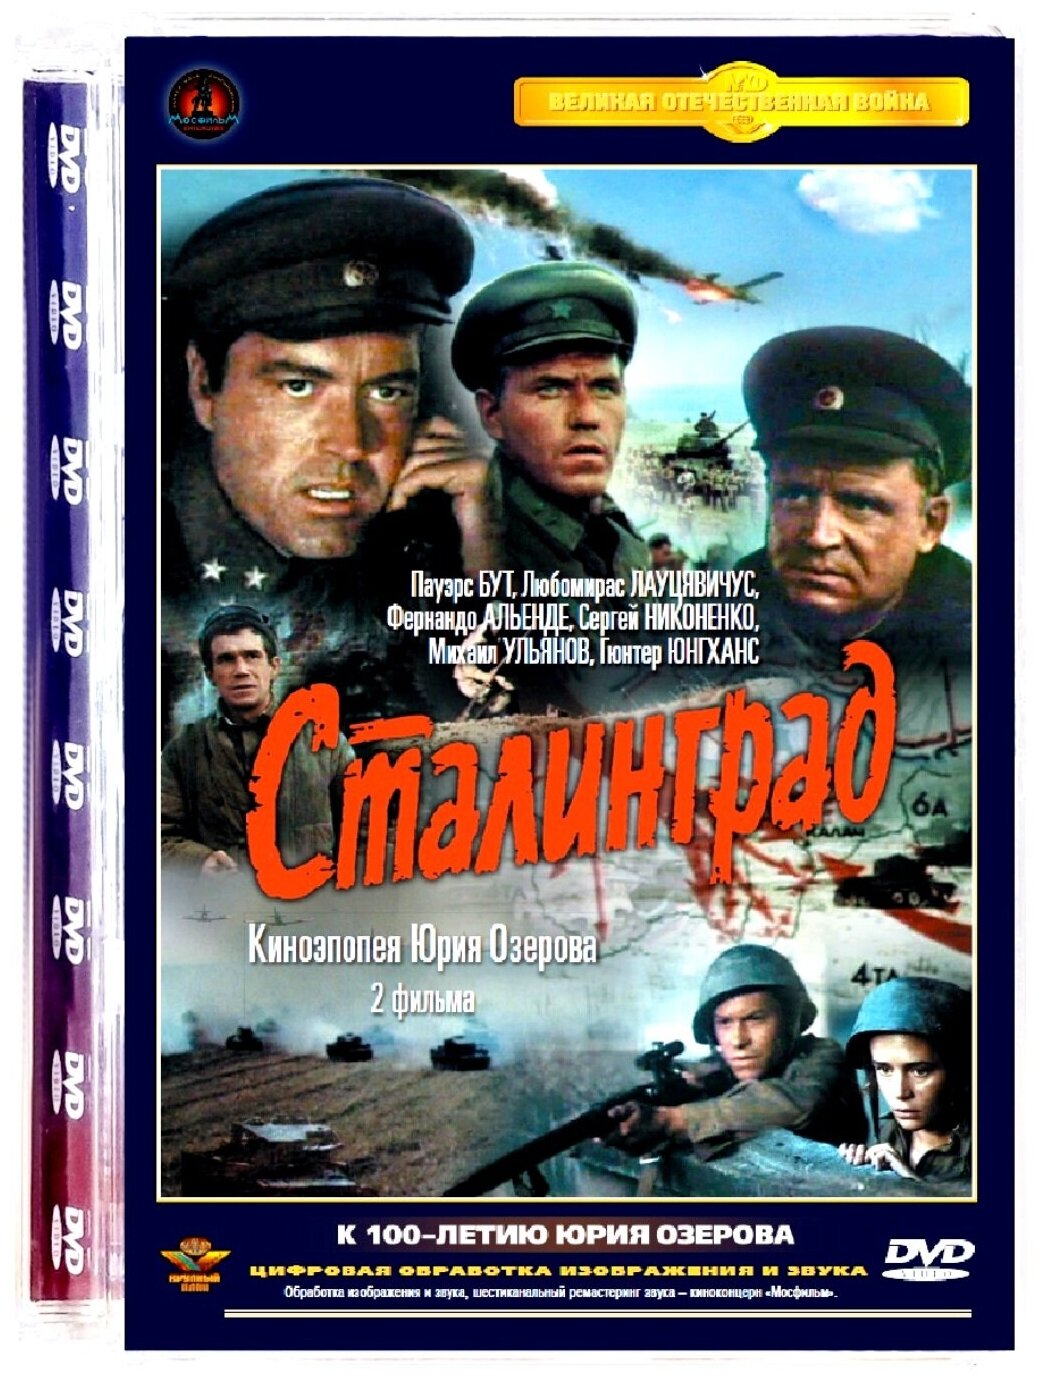 Сталинград DVD)